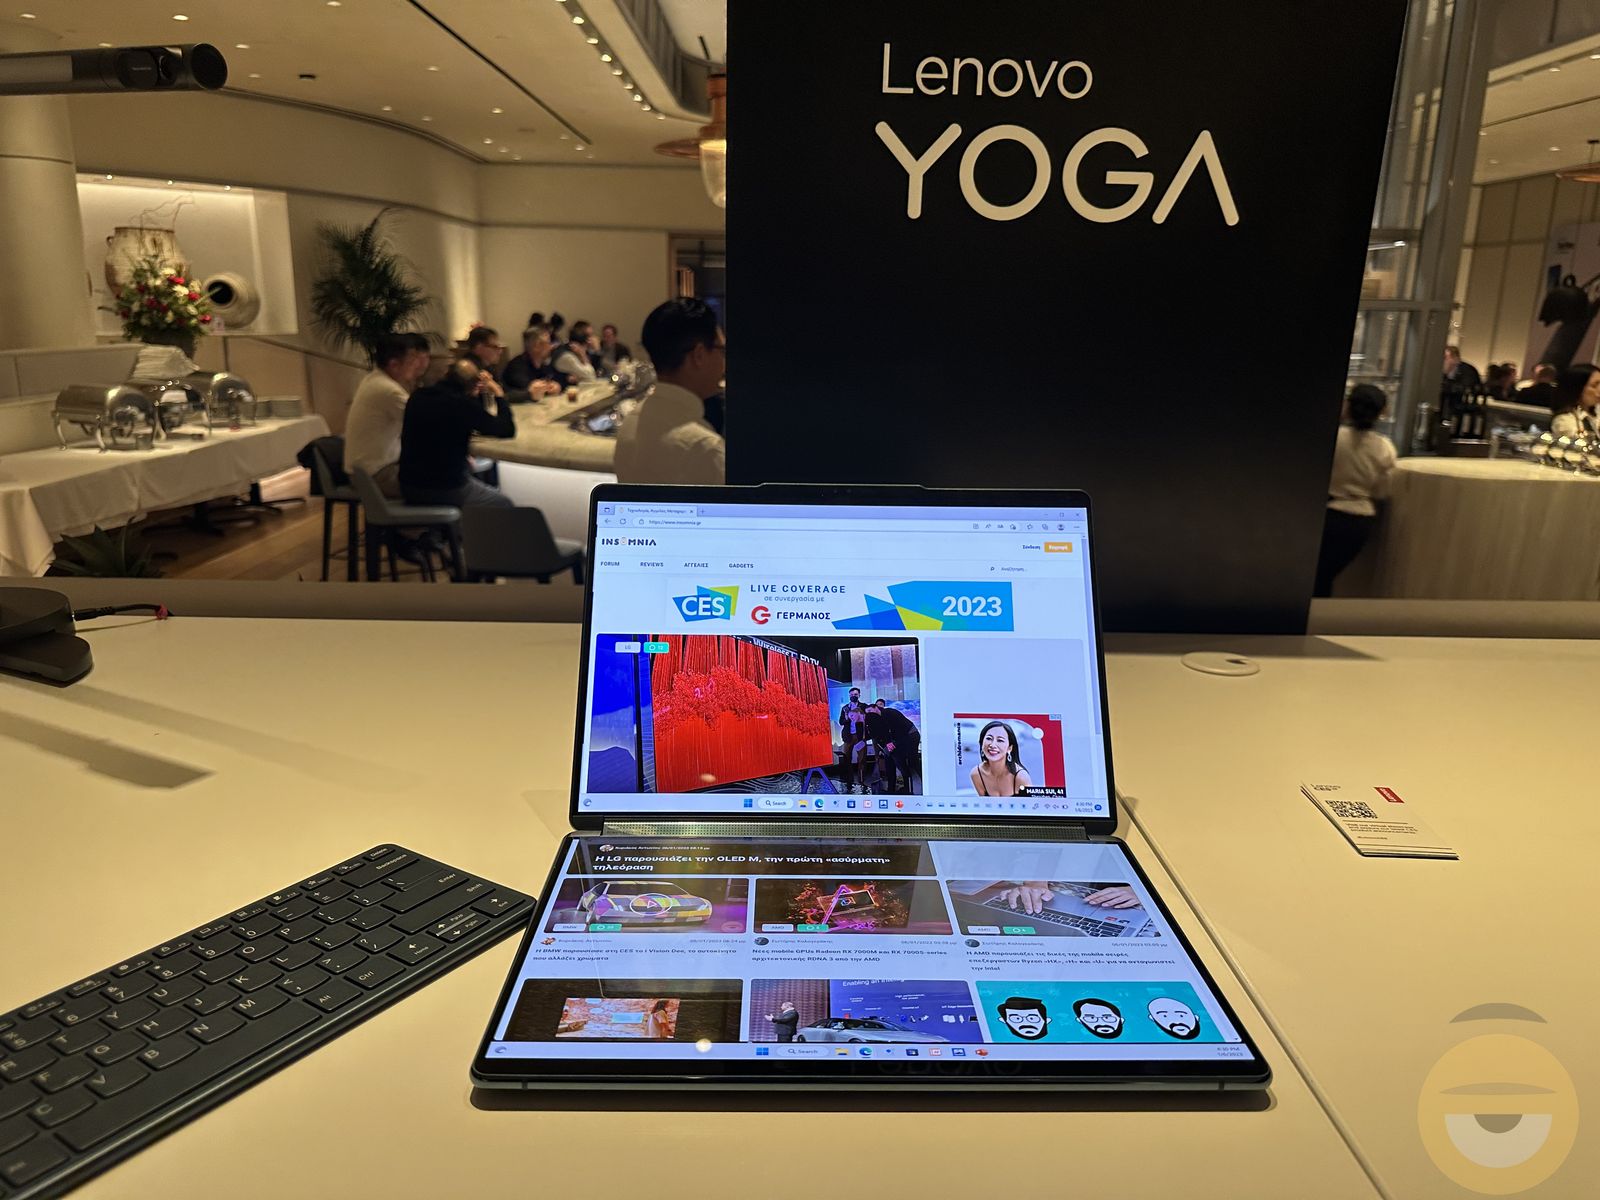 Το Yoga Book 9i της Lenovo έχει δύο οθόνες για παραγωγικότητα άνευ προηγούμενου